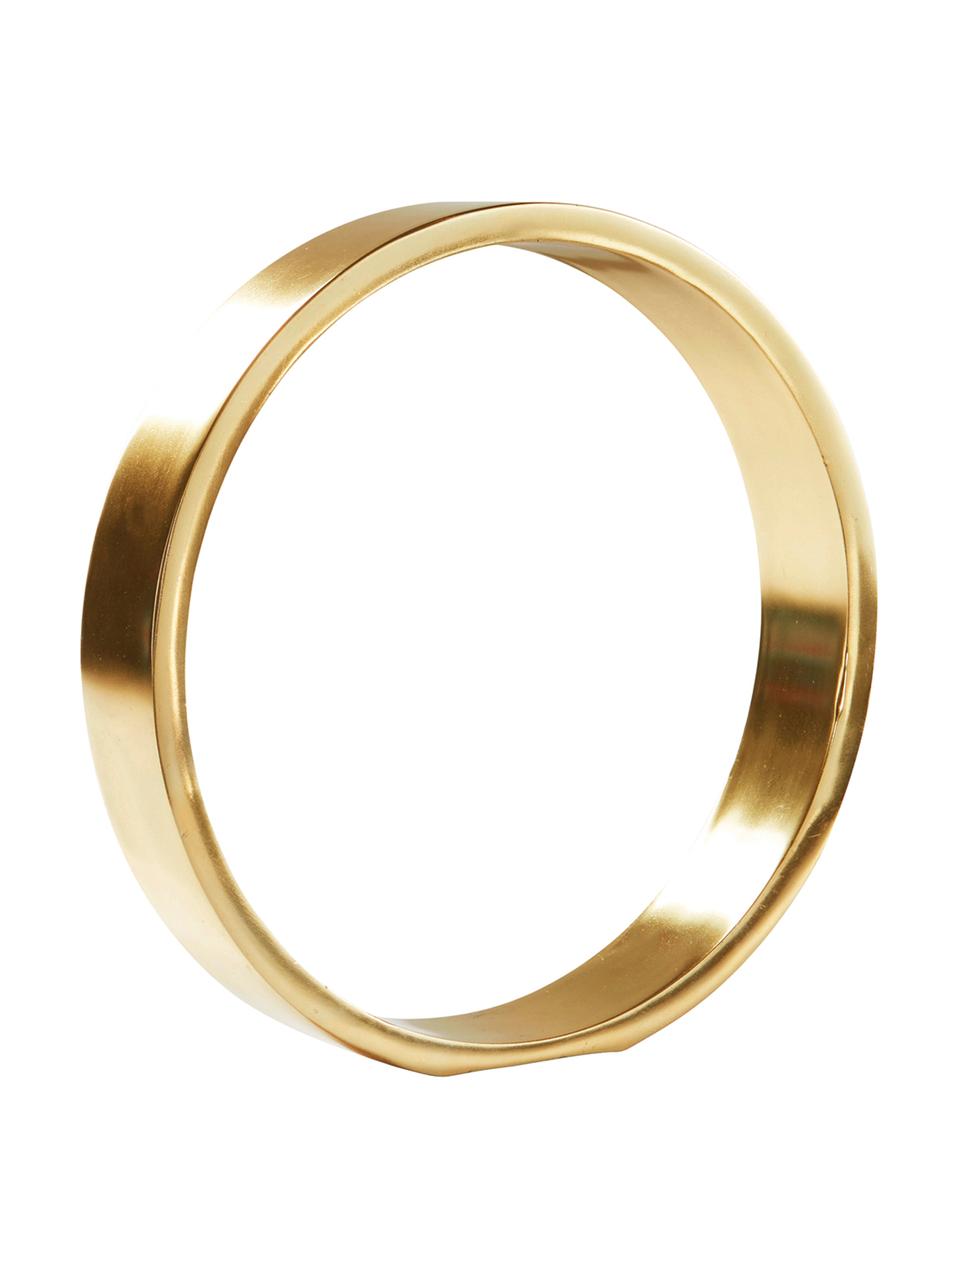 Pieza decorativa Ring, Metal recubierto, Dorado, Ø 25 x Al 25 cm